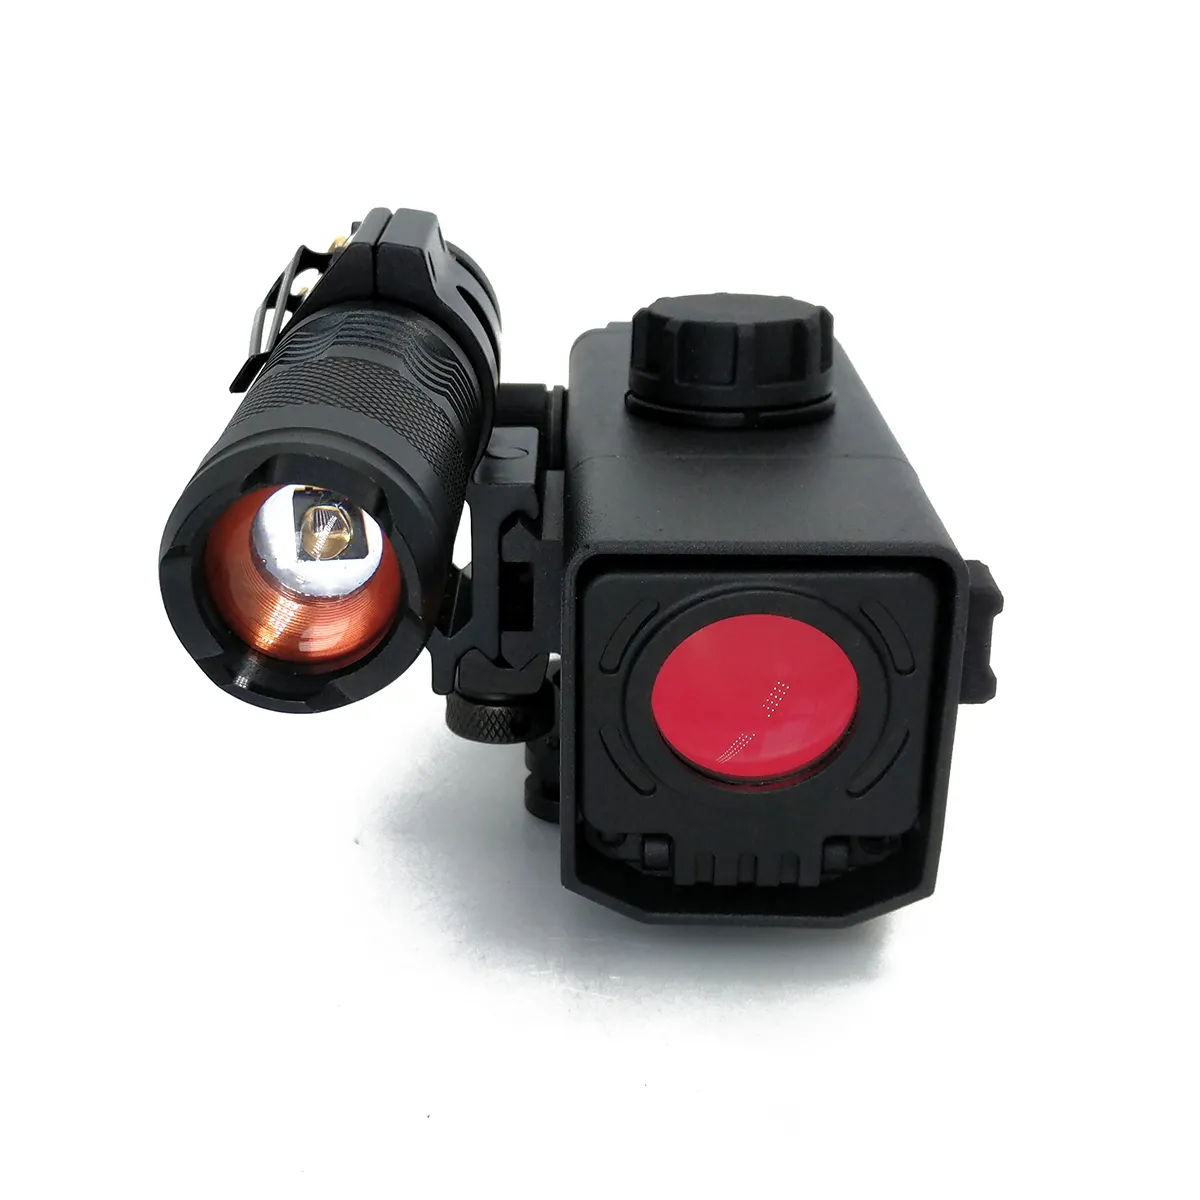 Upgrade TRD10PRO Red Dot Laser Sight ottica Scope telescopio Sight visione notturna a infrarossi per la caccia